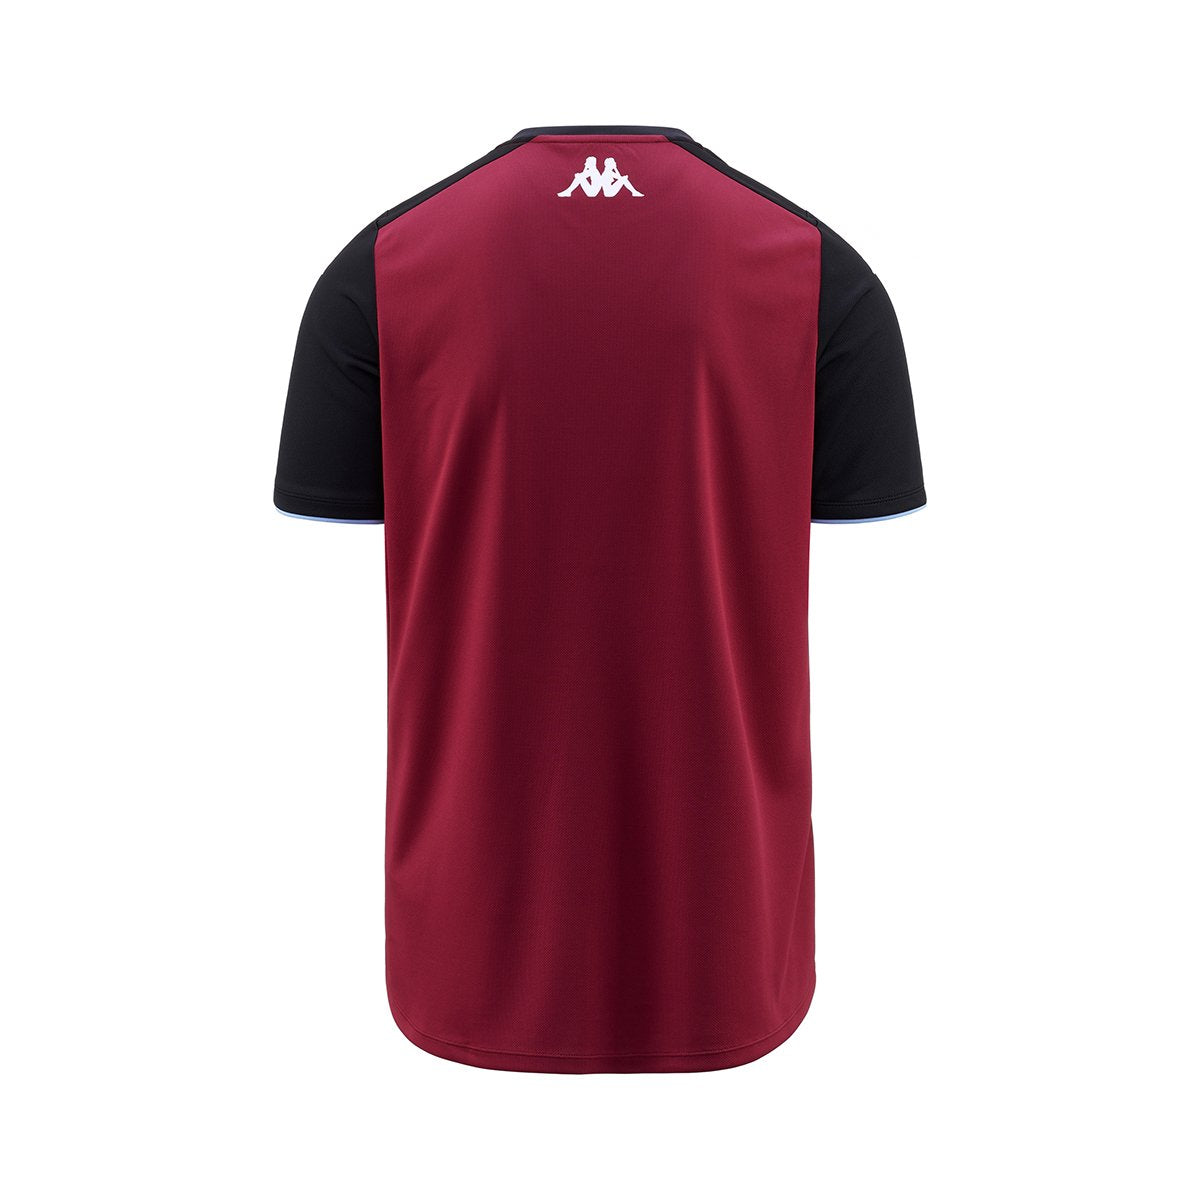 Camiseta Abou Pro 5 Aston Villa FC niño Rojo - Imagen 2